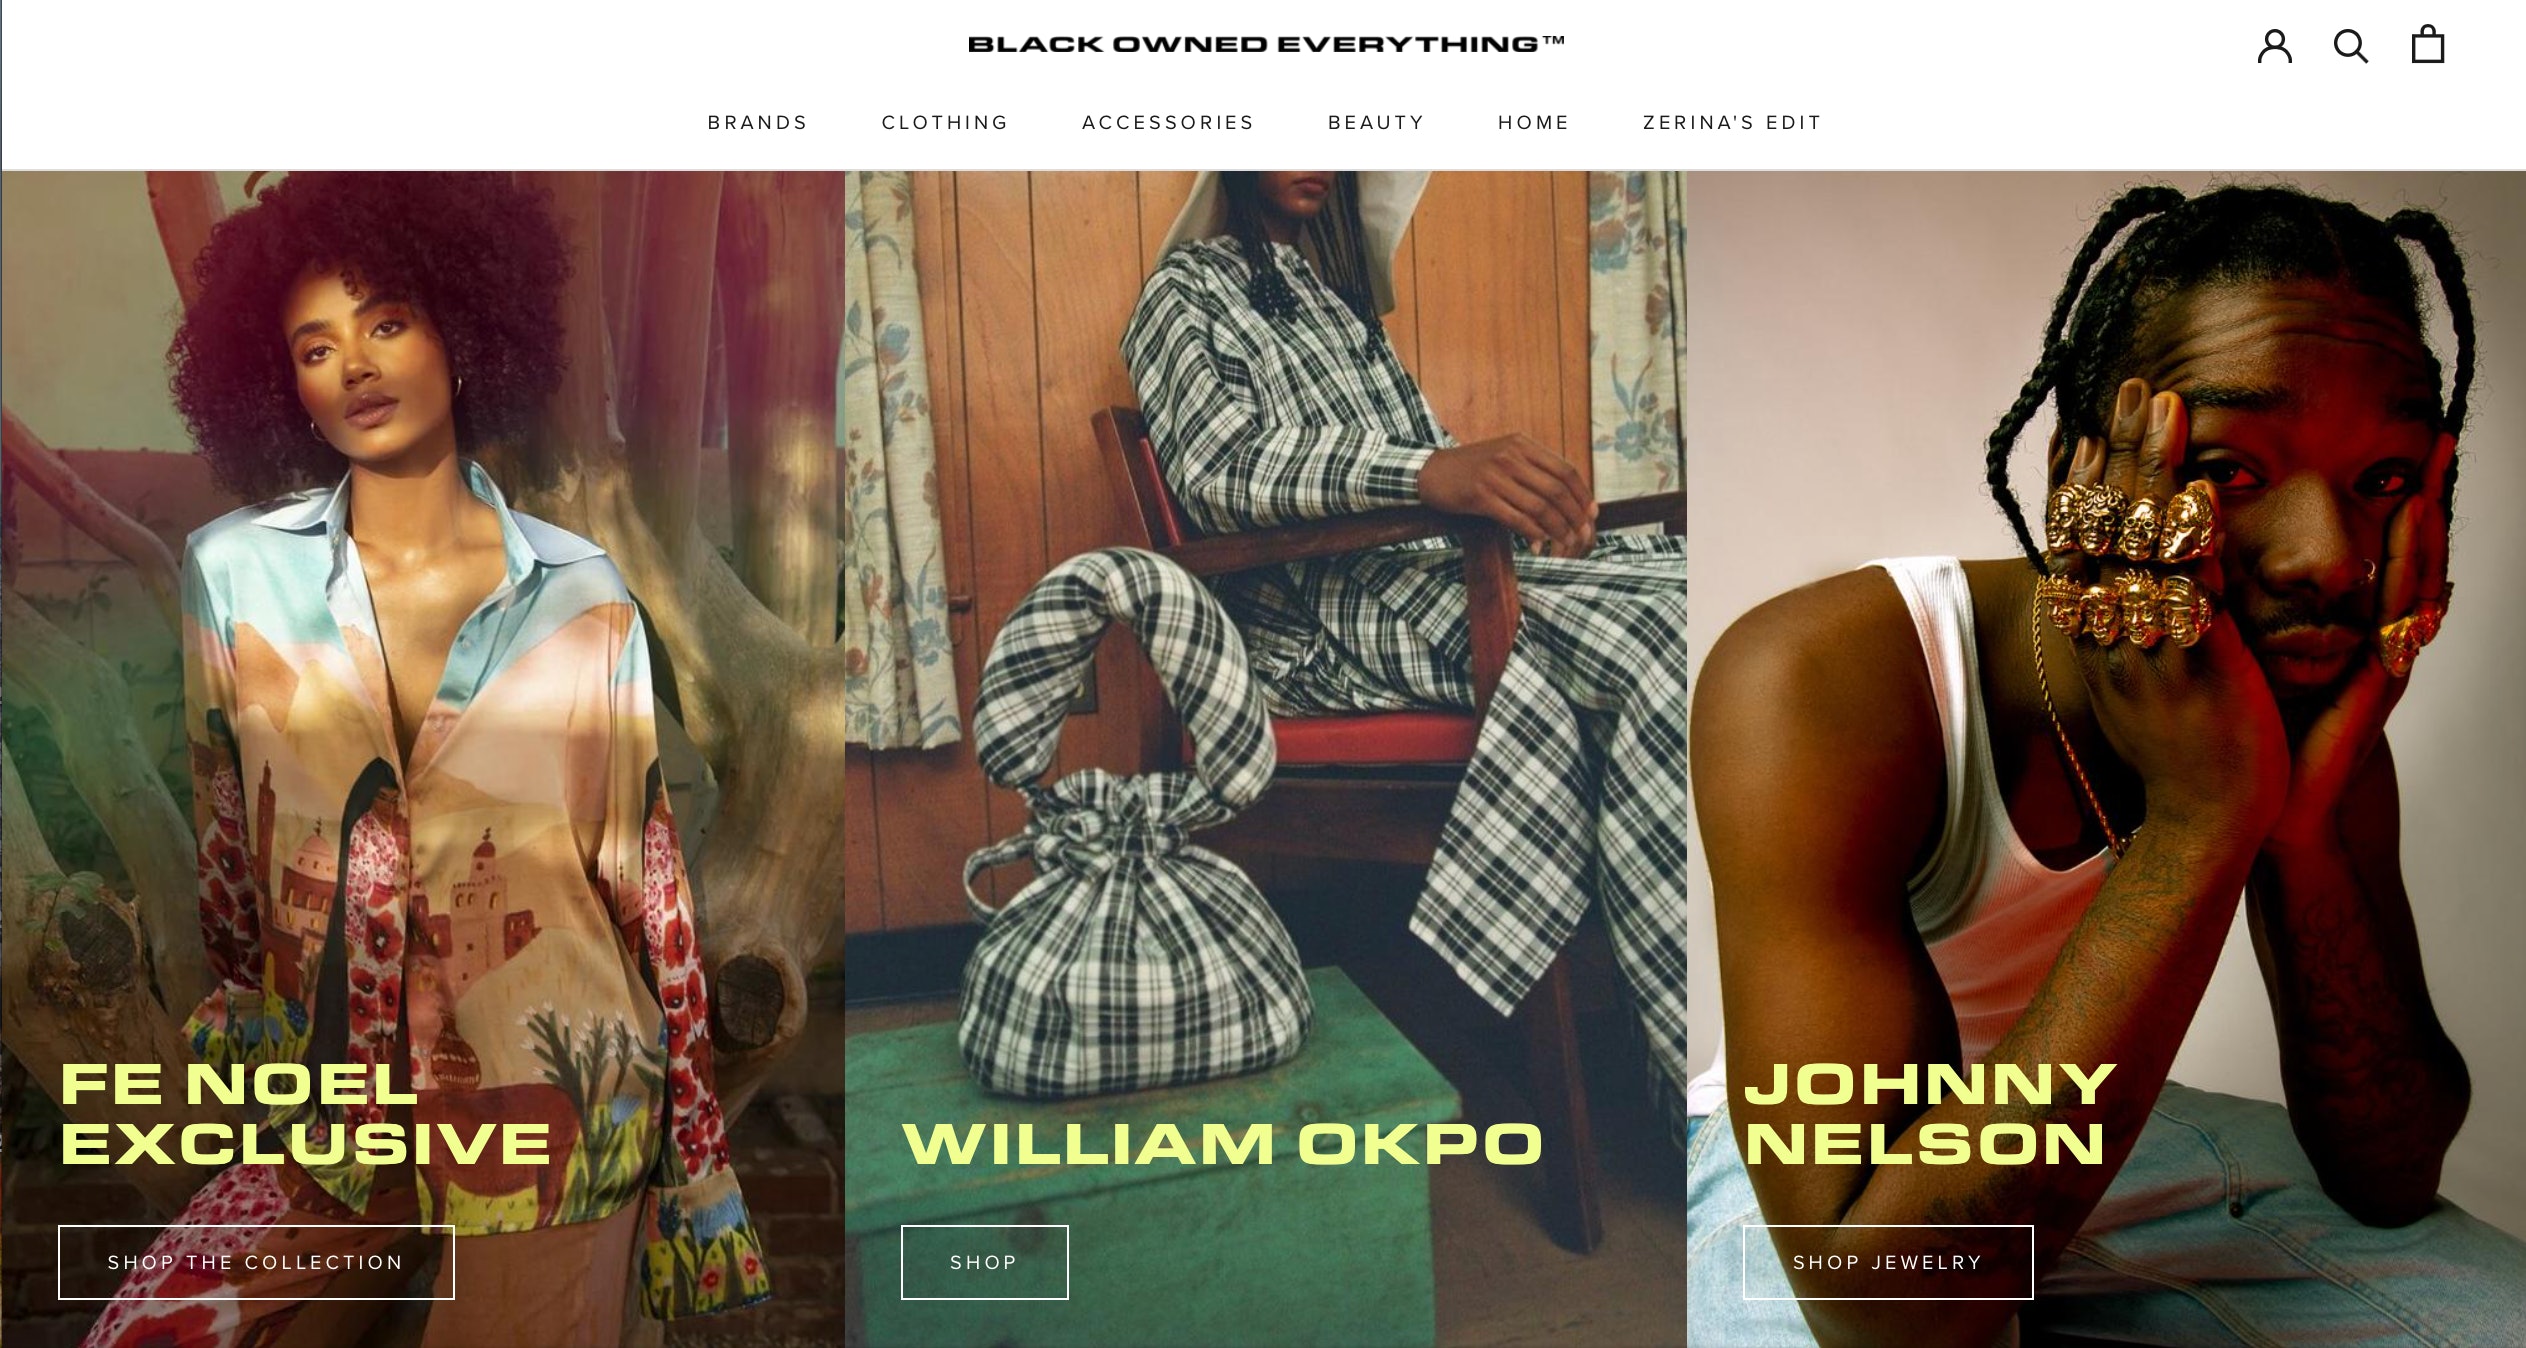 La vitrine numérique de Zerina Akers met en valeur les marques appartenant à des Noirs